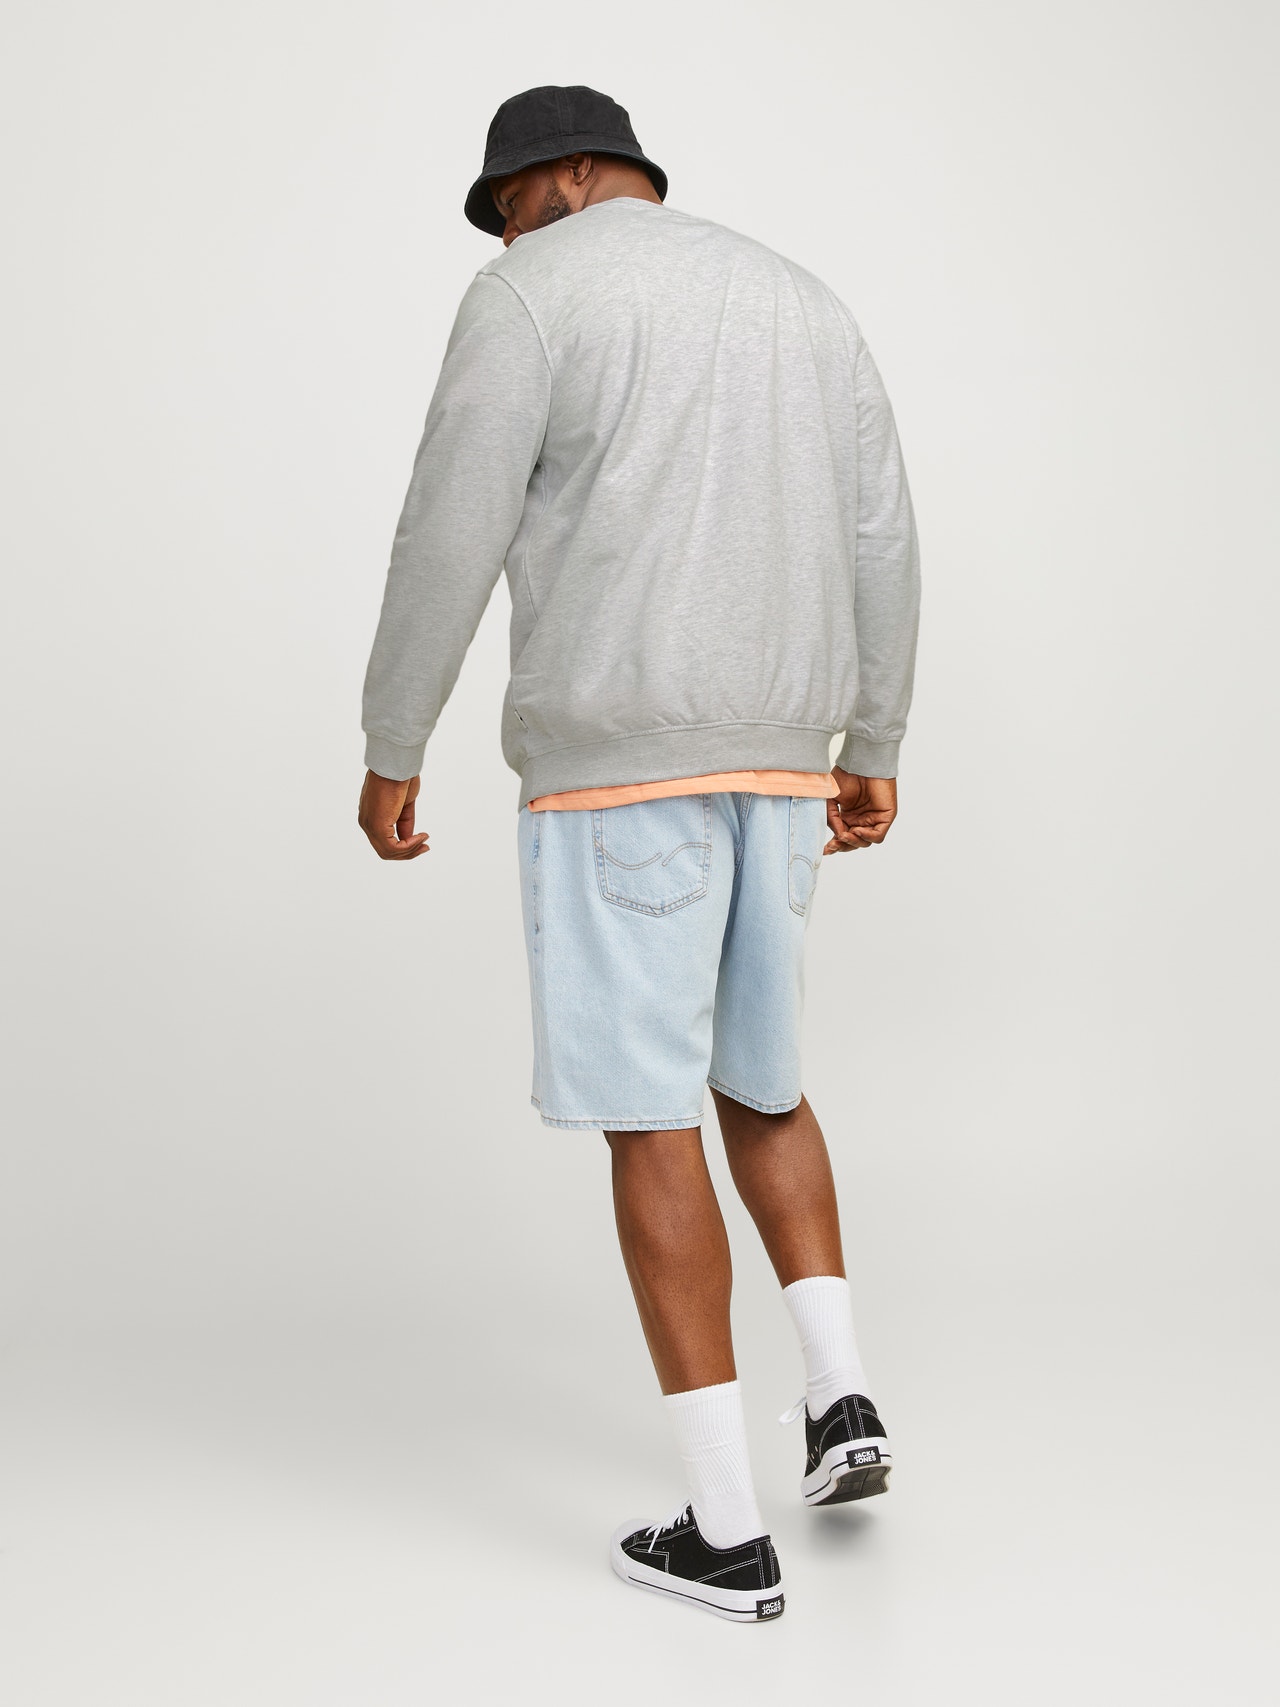 Jack & Jones Plus Size Bedrukt Sweatshirt met ronde hals -Bright White - 12261380